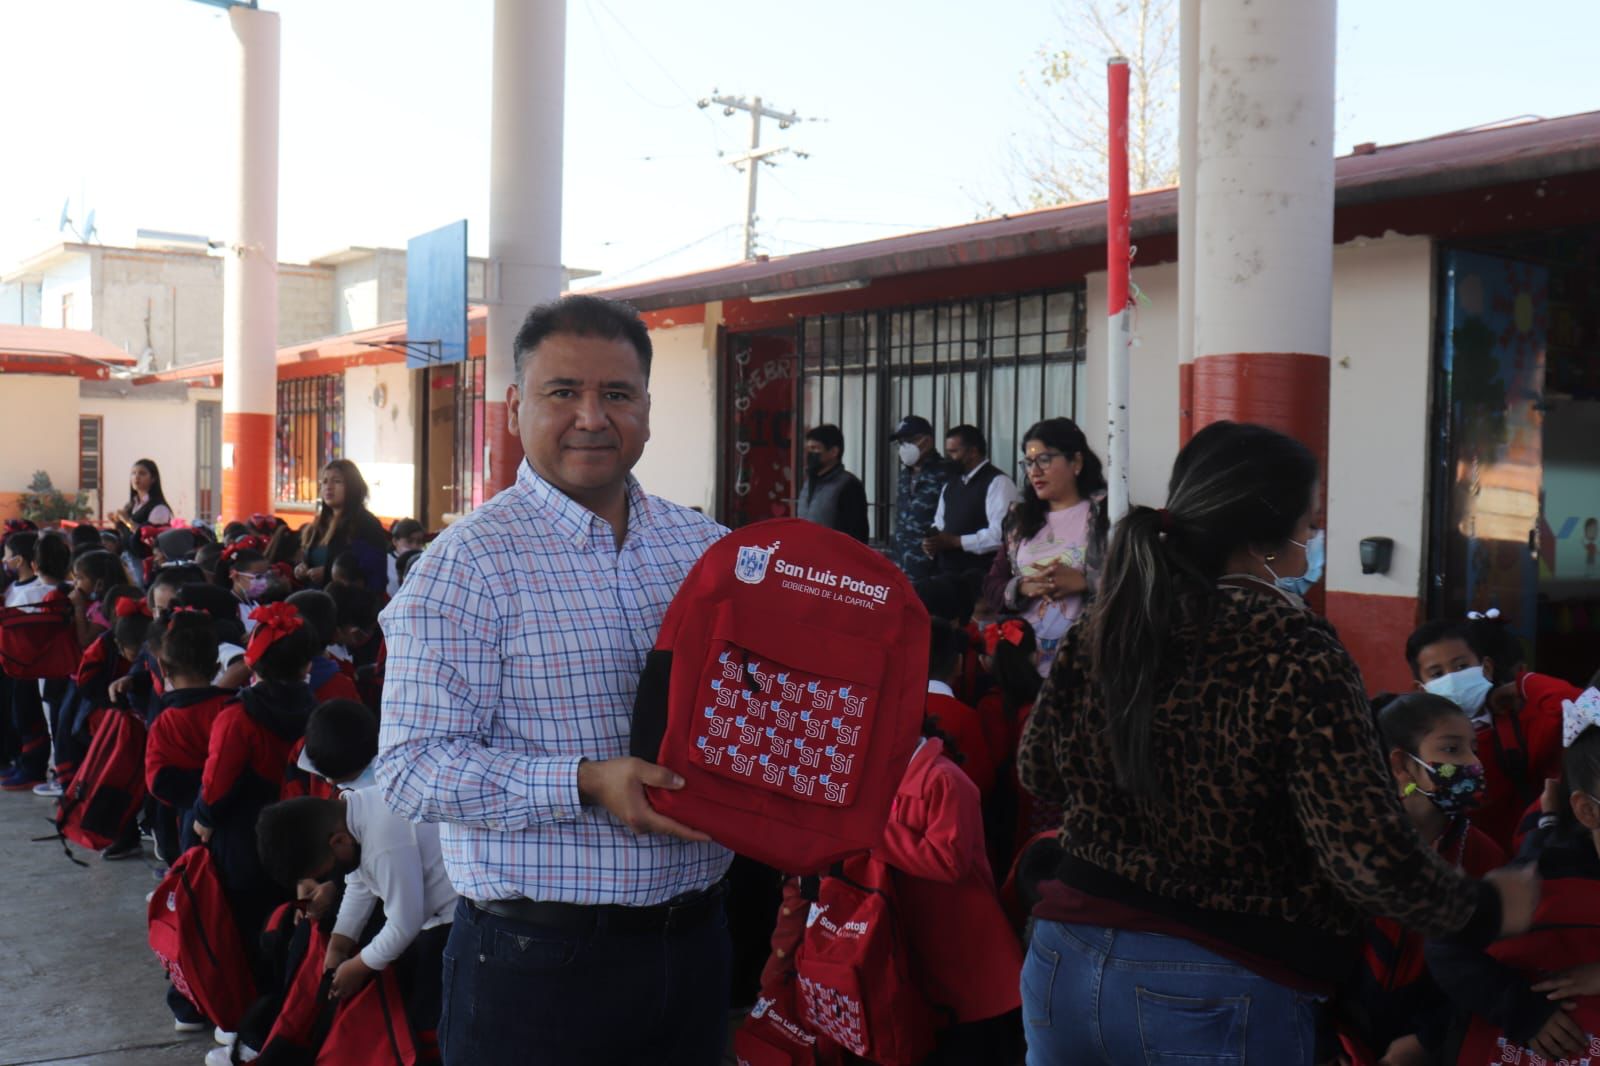  Con “A mi escuela con todo”, Gobierno de la Capital entrega mochilas y útiles escolares a estudiantes en la Delegación La Pila